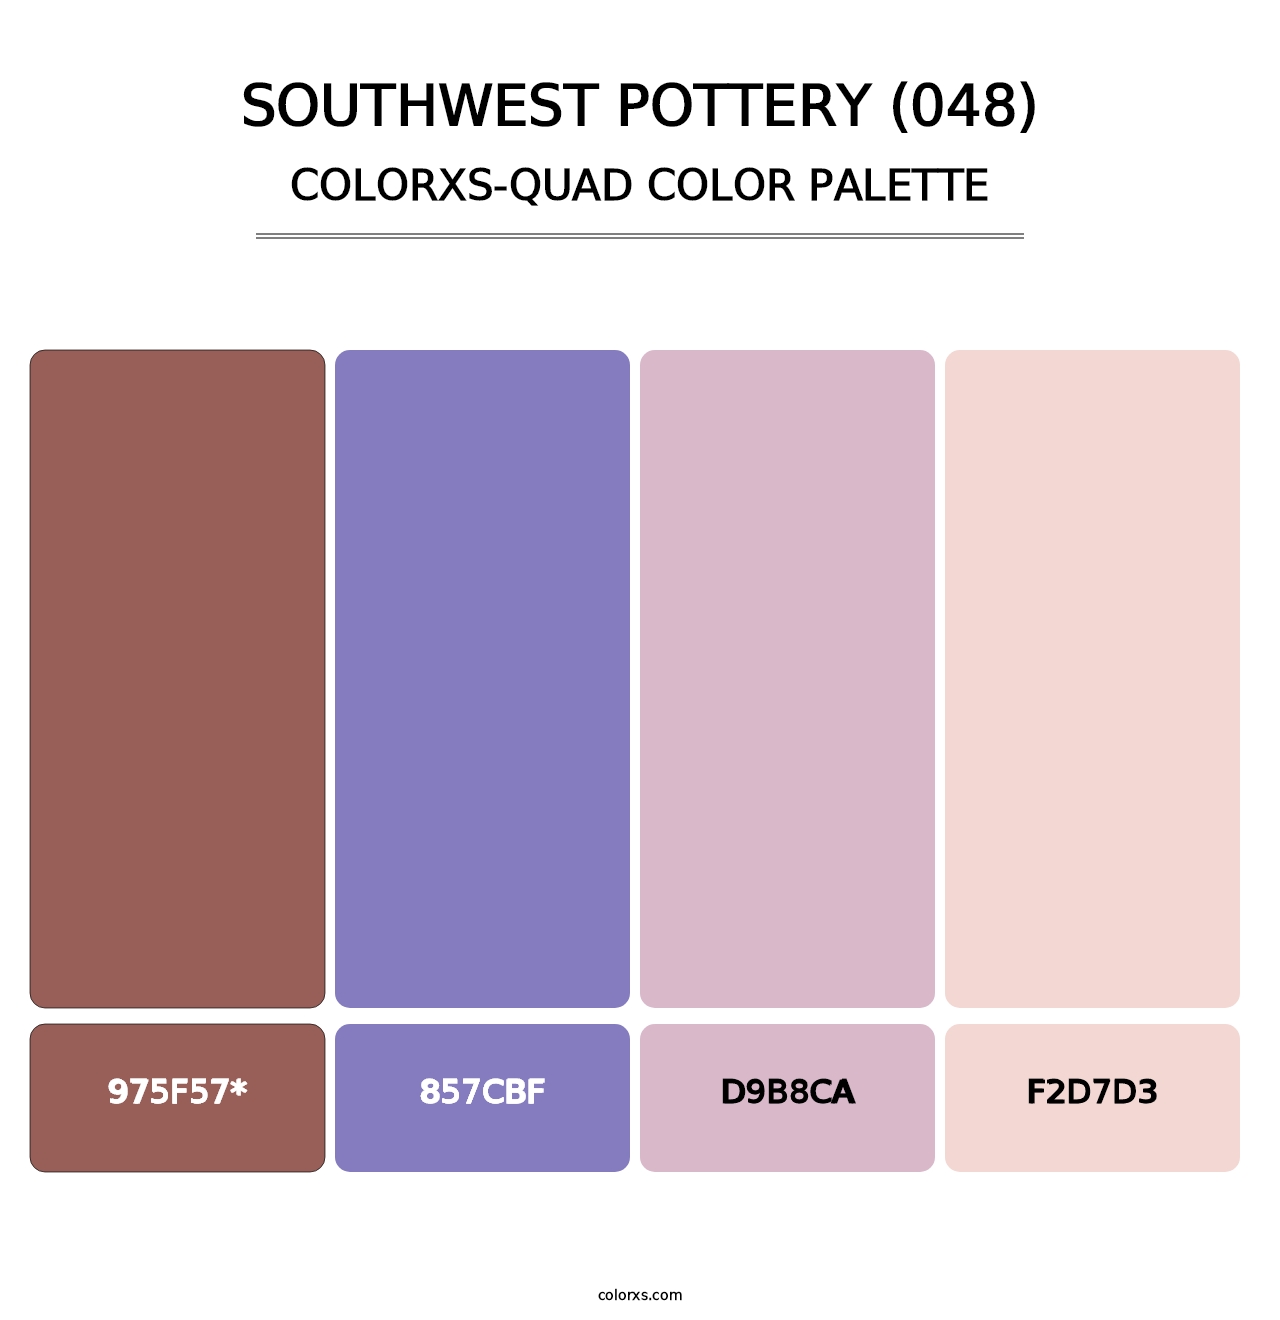 Southwest Pottery (048) - Colorxs Quad Palette